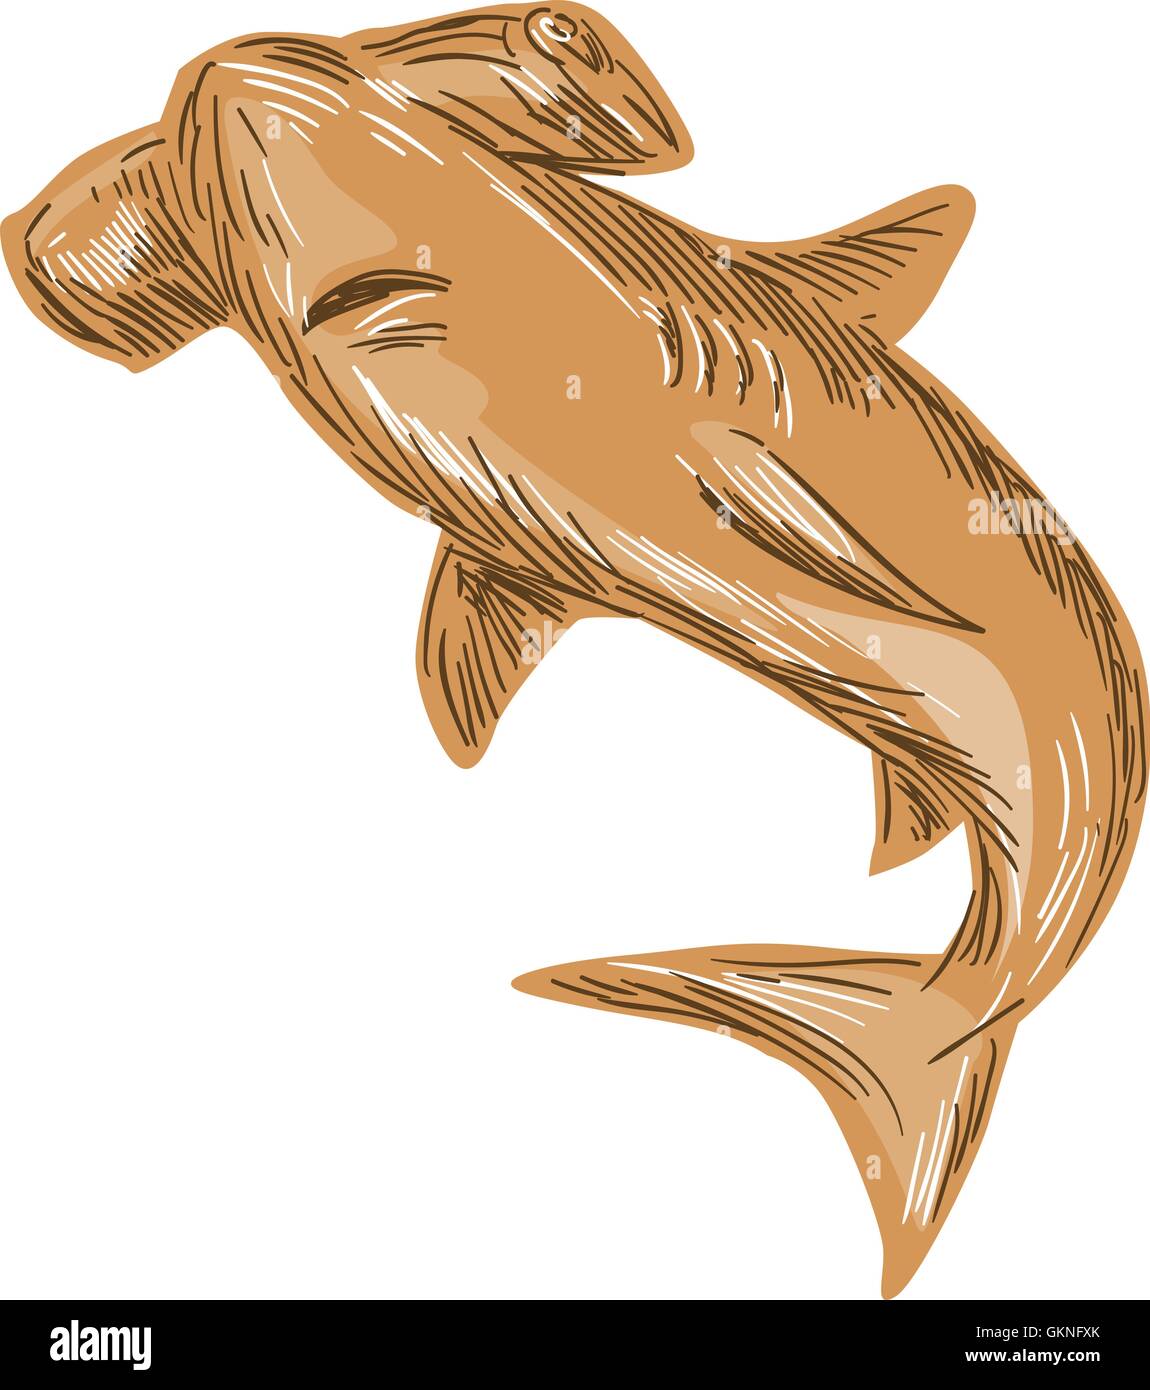 Style croquis dessin illustration d'un jeu de requin-marteau isolées sur fond blanc. Illustration de Vecteur